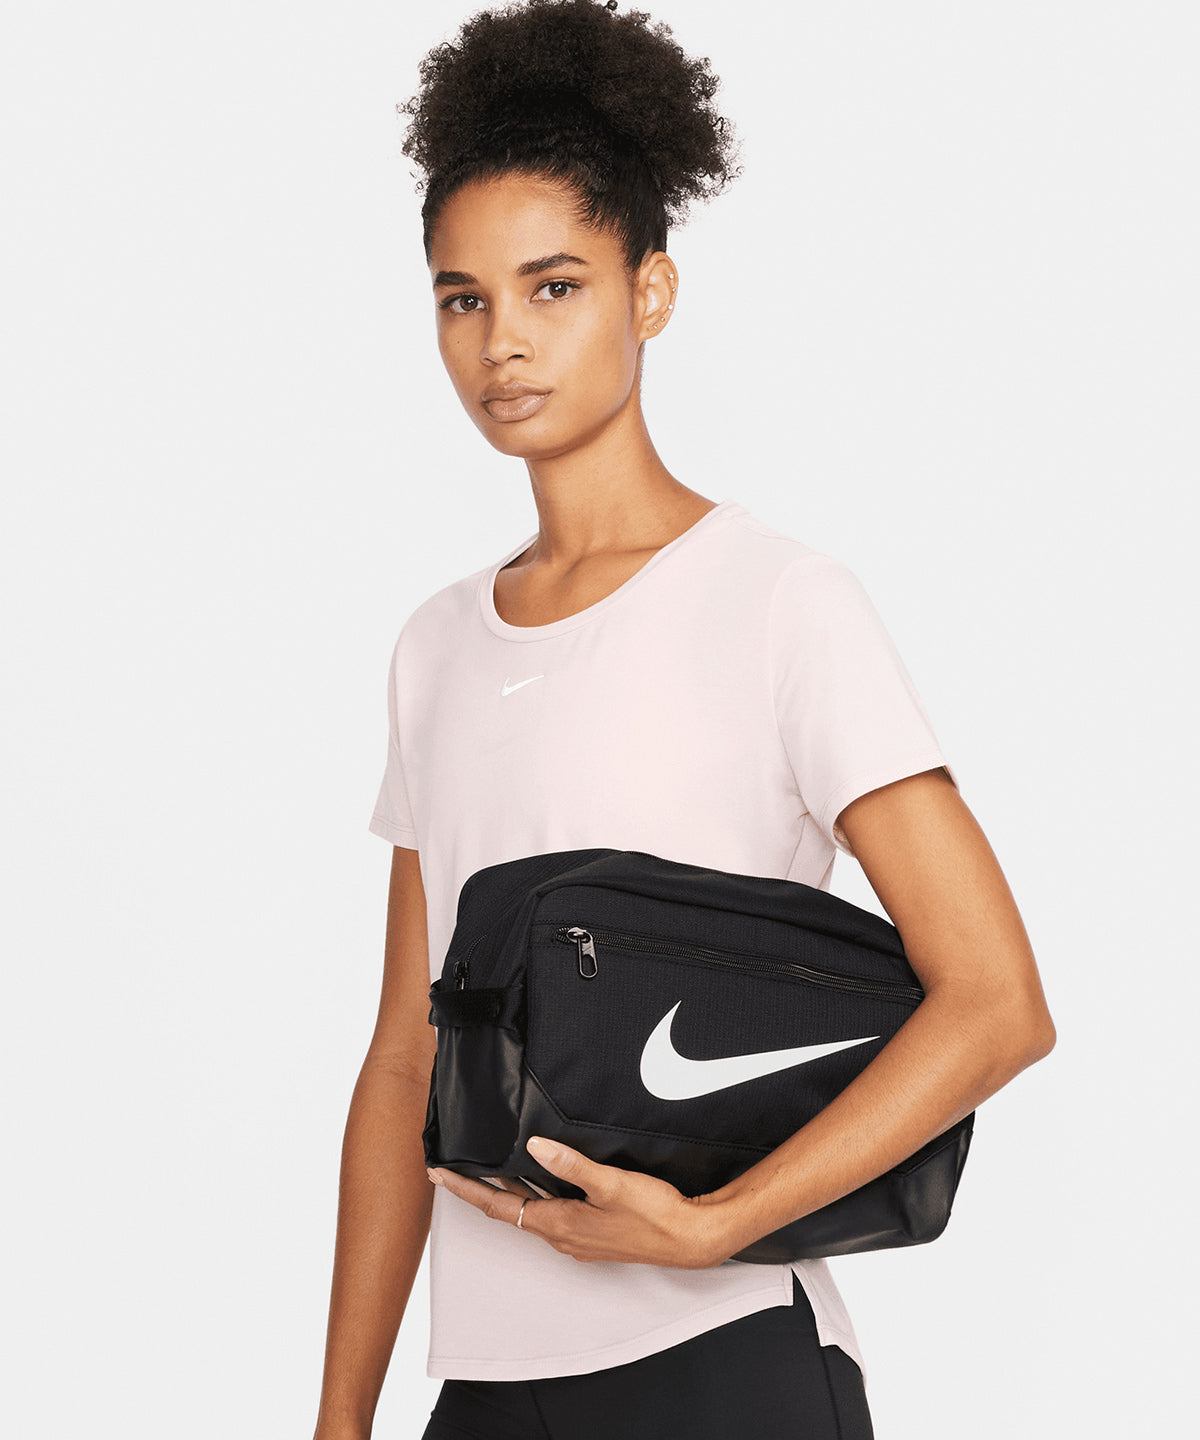 Töskur - Nike Brasilia Shoe Bag 9.5 (11L)